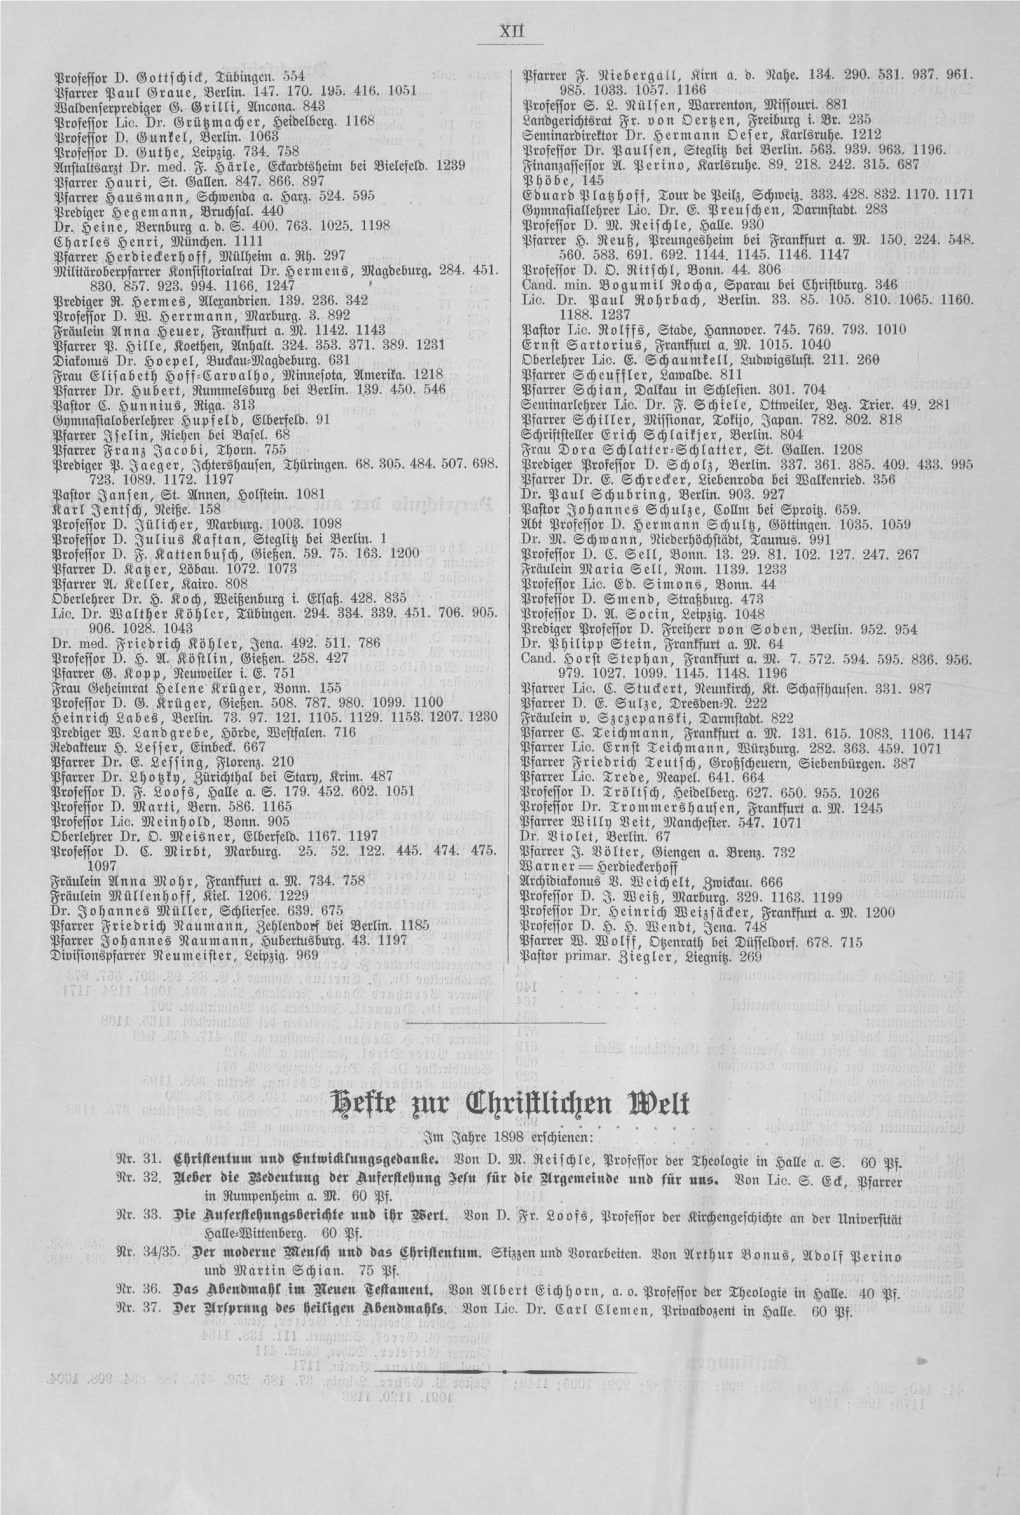 Hefte $Ut Christlichen Welt Im Jahre 1898 Erschienen: Nr